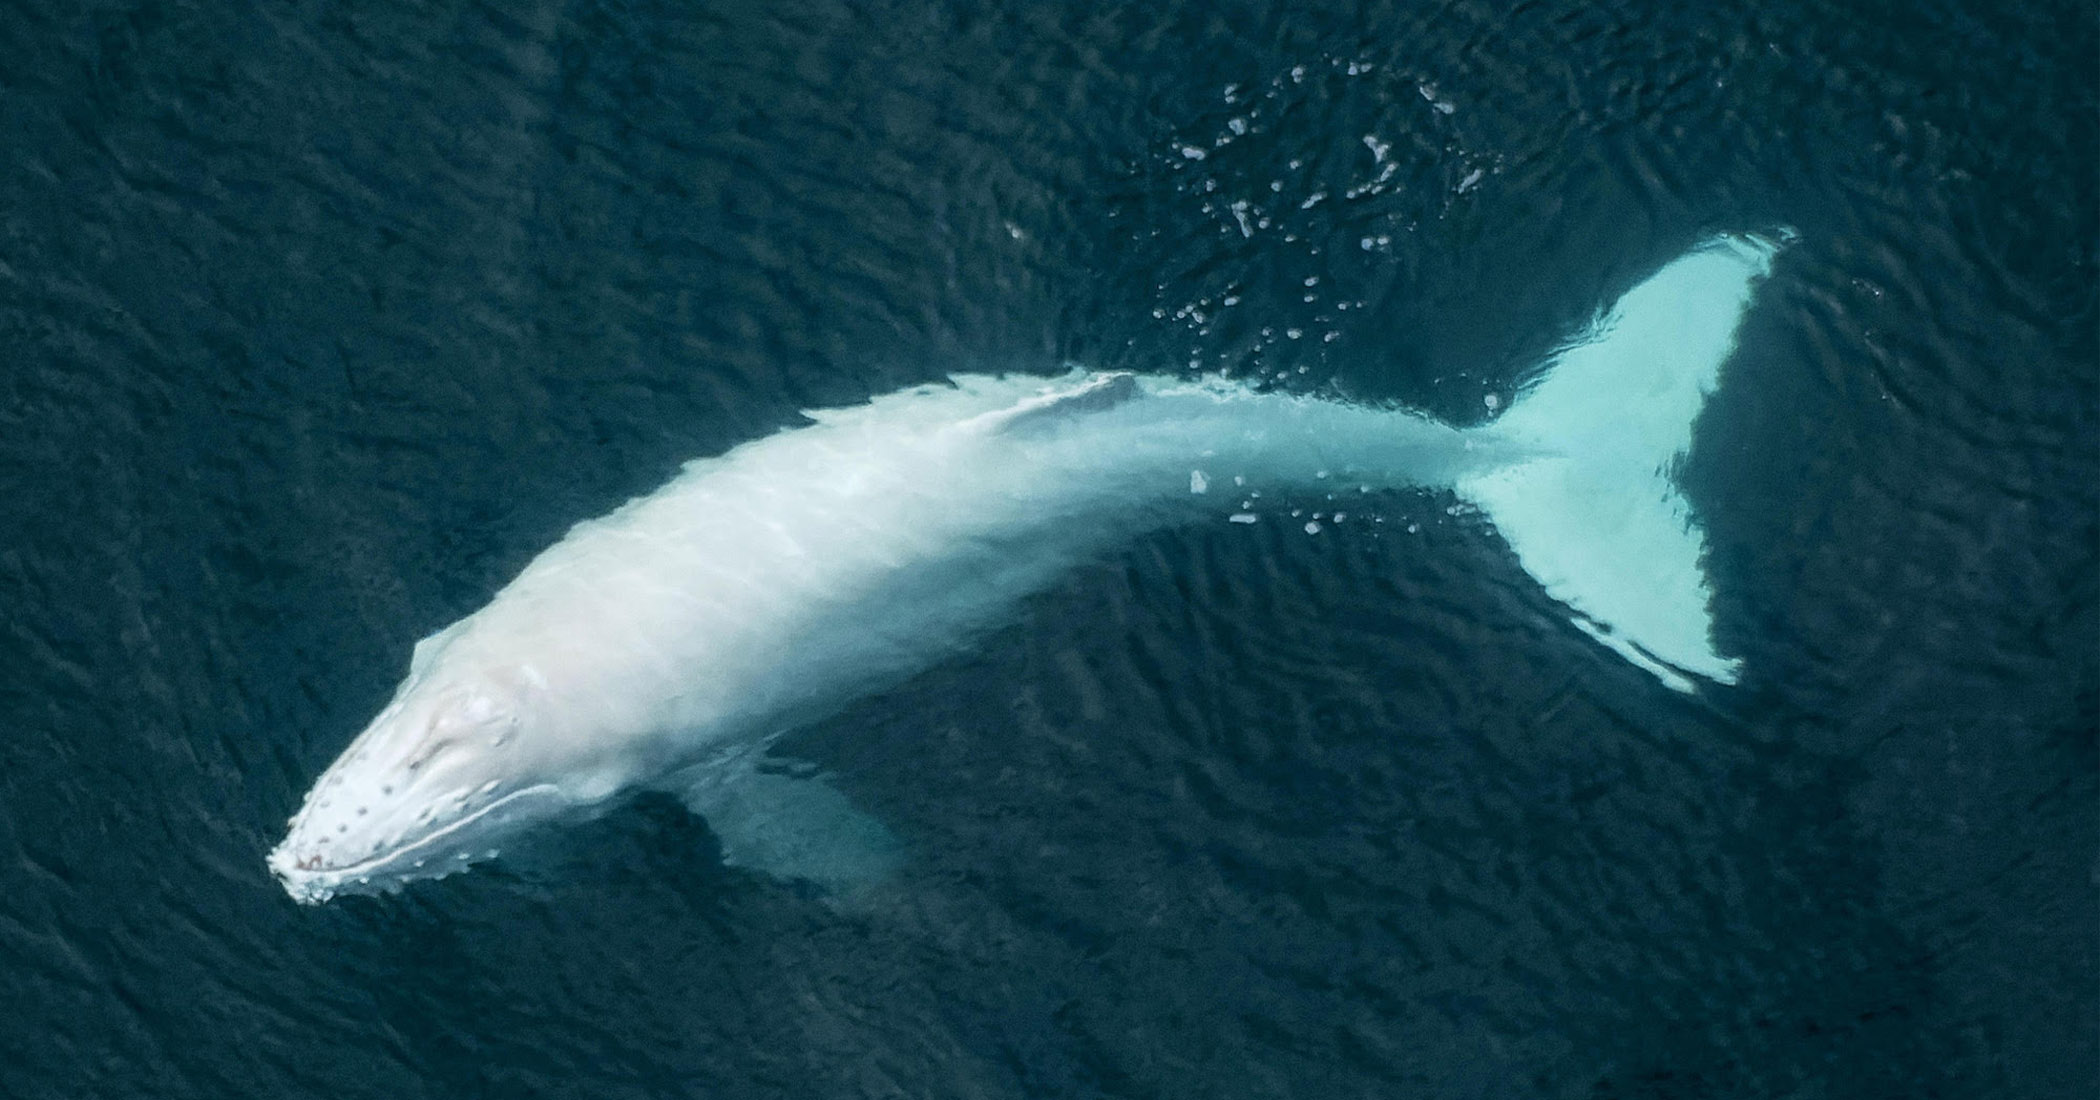 Photo of El piloto toma fotografías aéreas de raras crías de ballena jorobada albina nadando con su madre